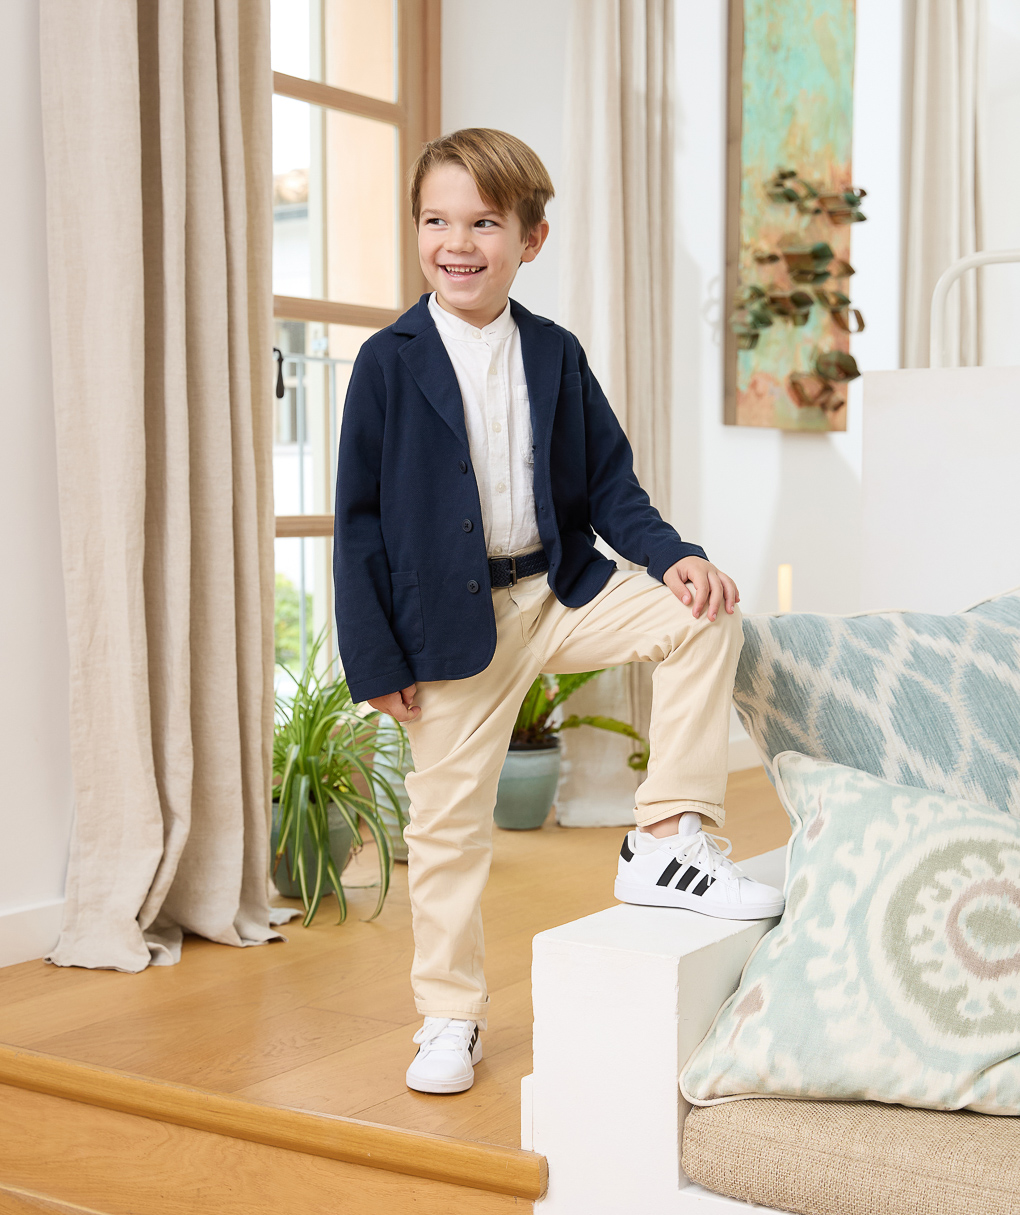 παιδικό παντελόνι twill μπεζ elegant για αγόρι - Prénatal